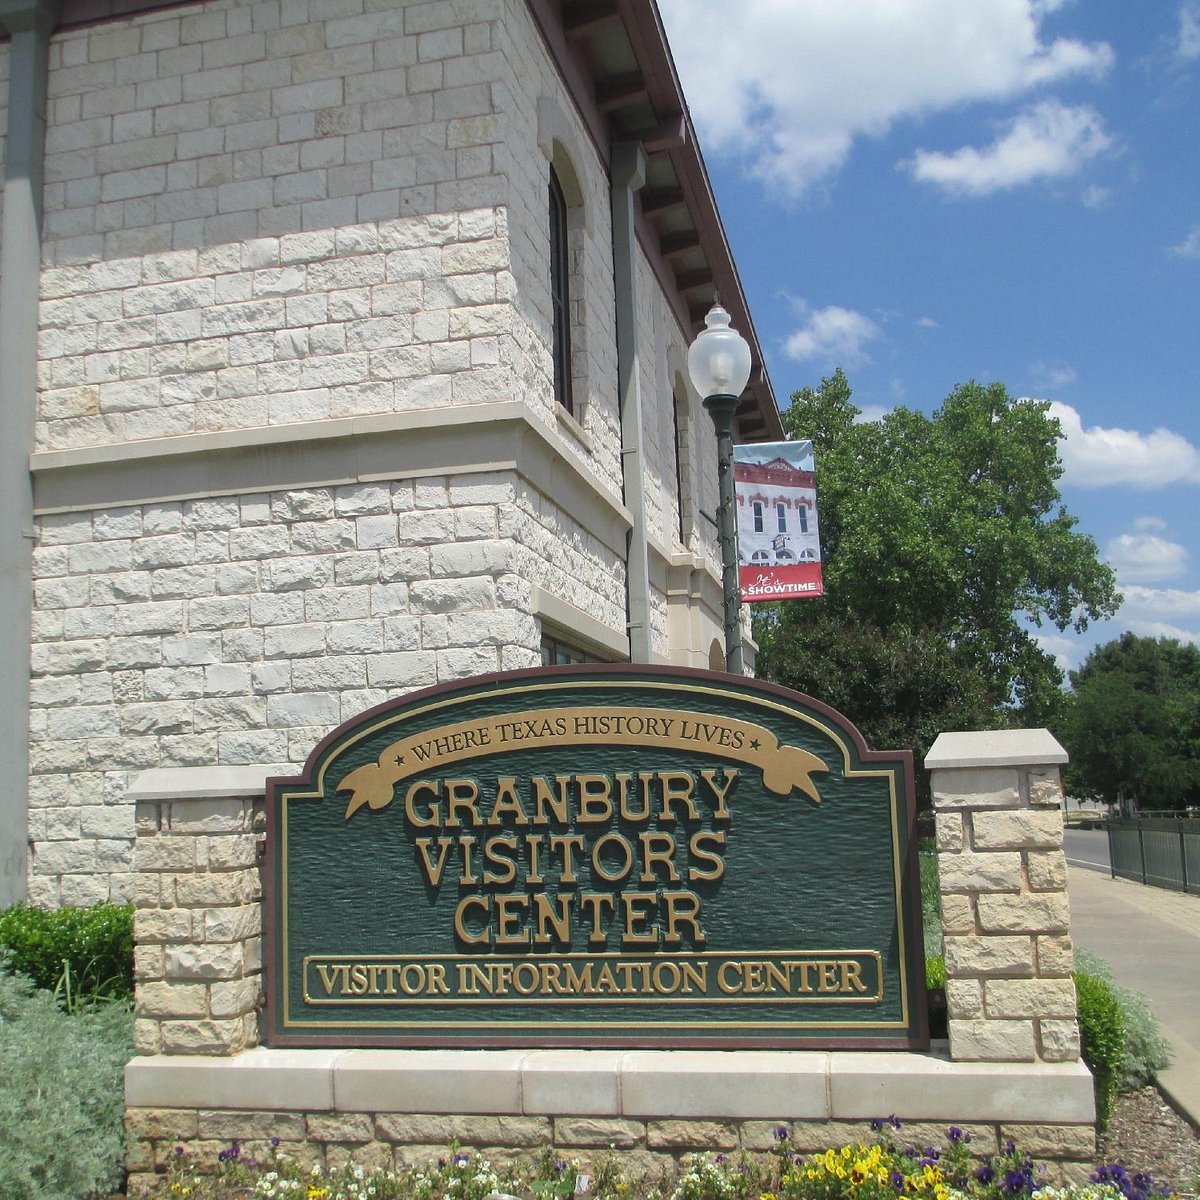 Granbury Visitor Center: лучшие советы перед посещением - Tripadvisor.